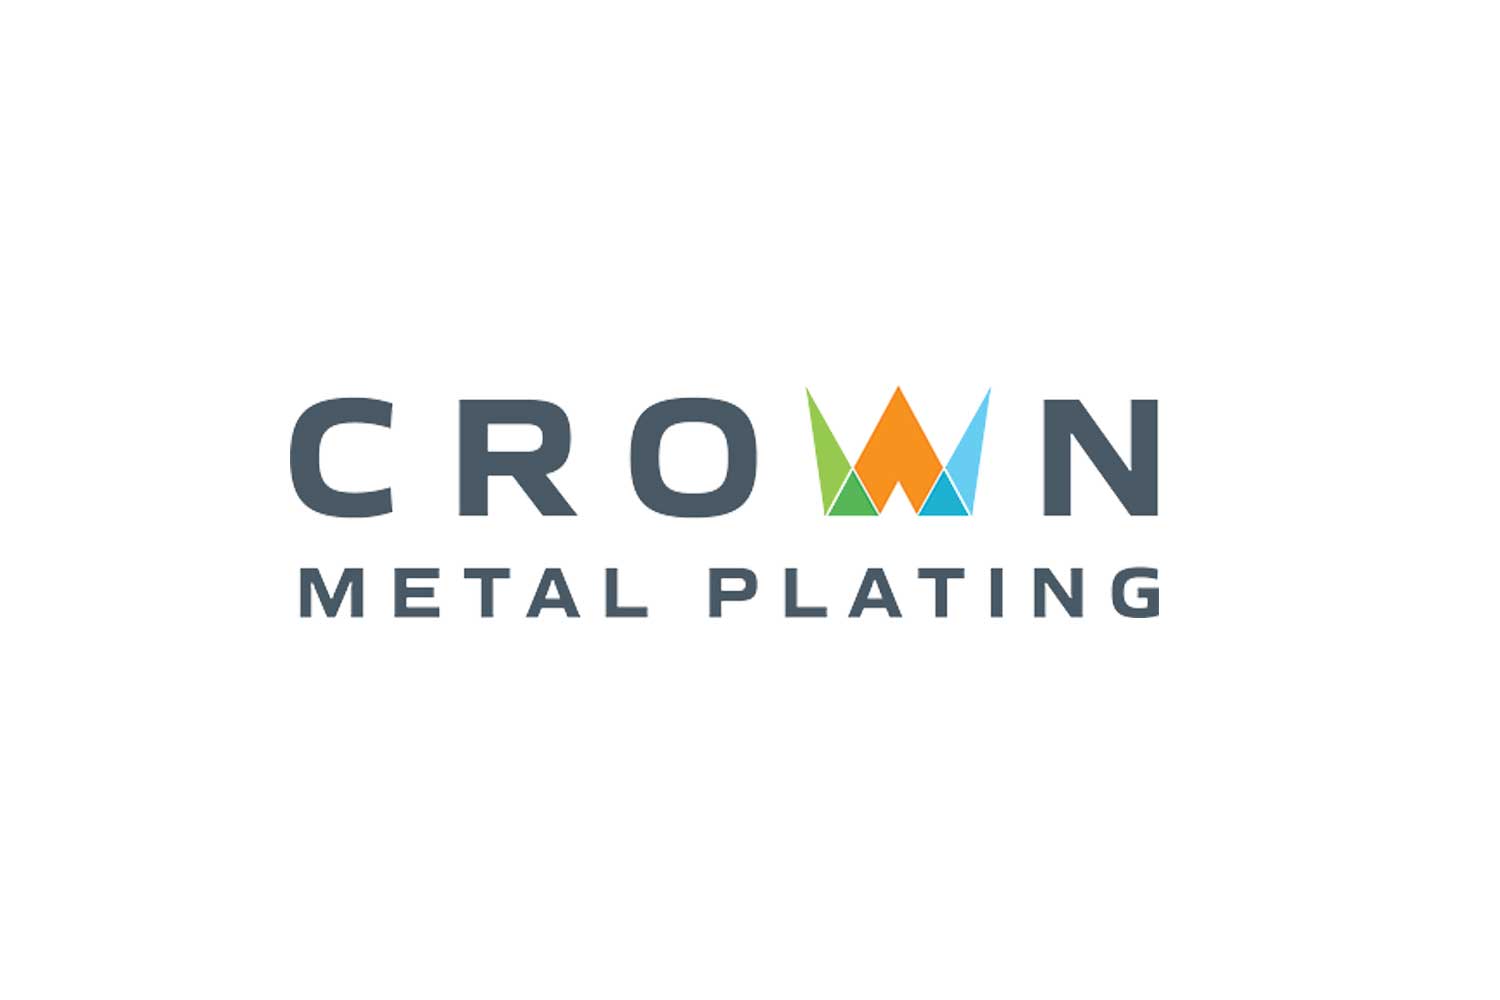 Crown Metal Plating logo.